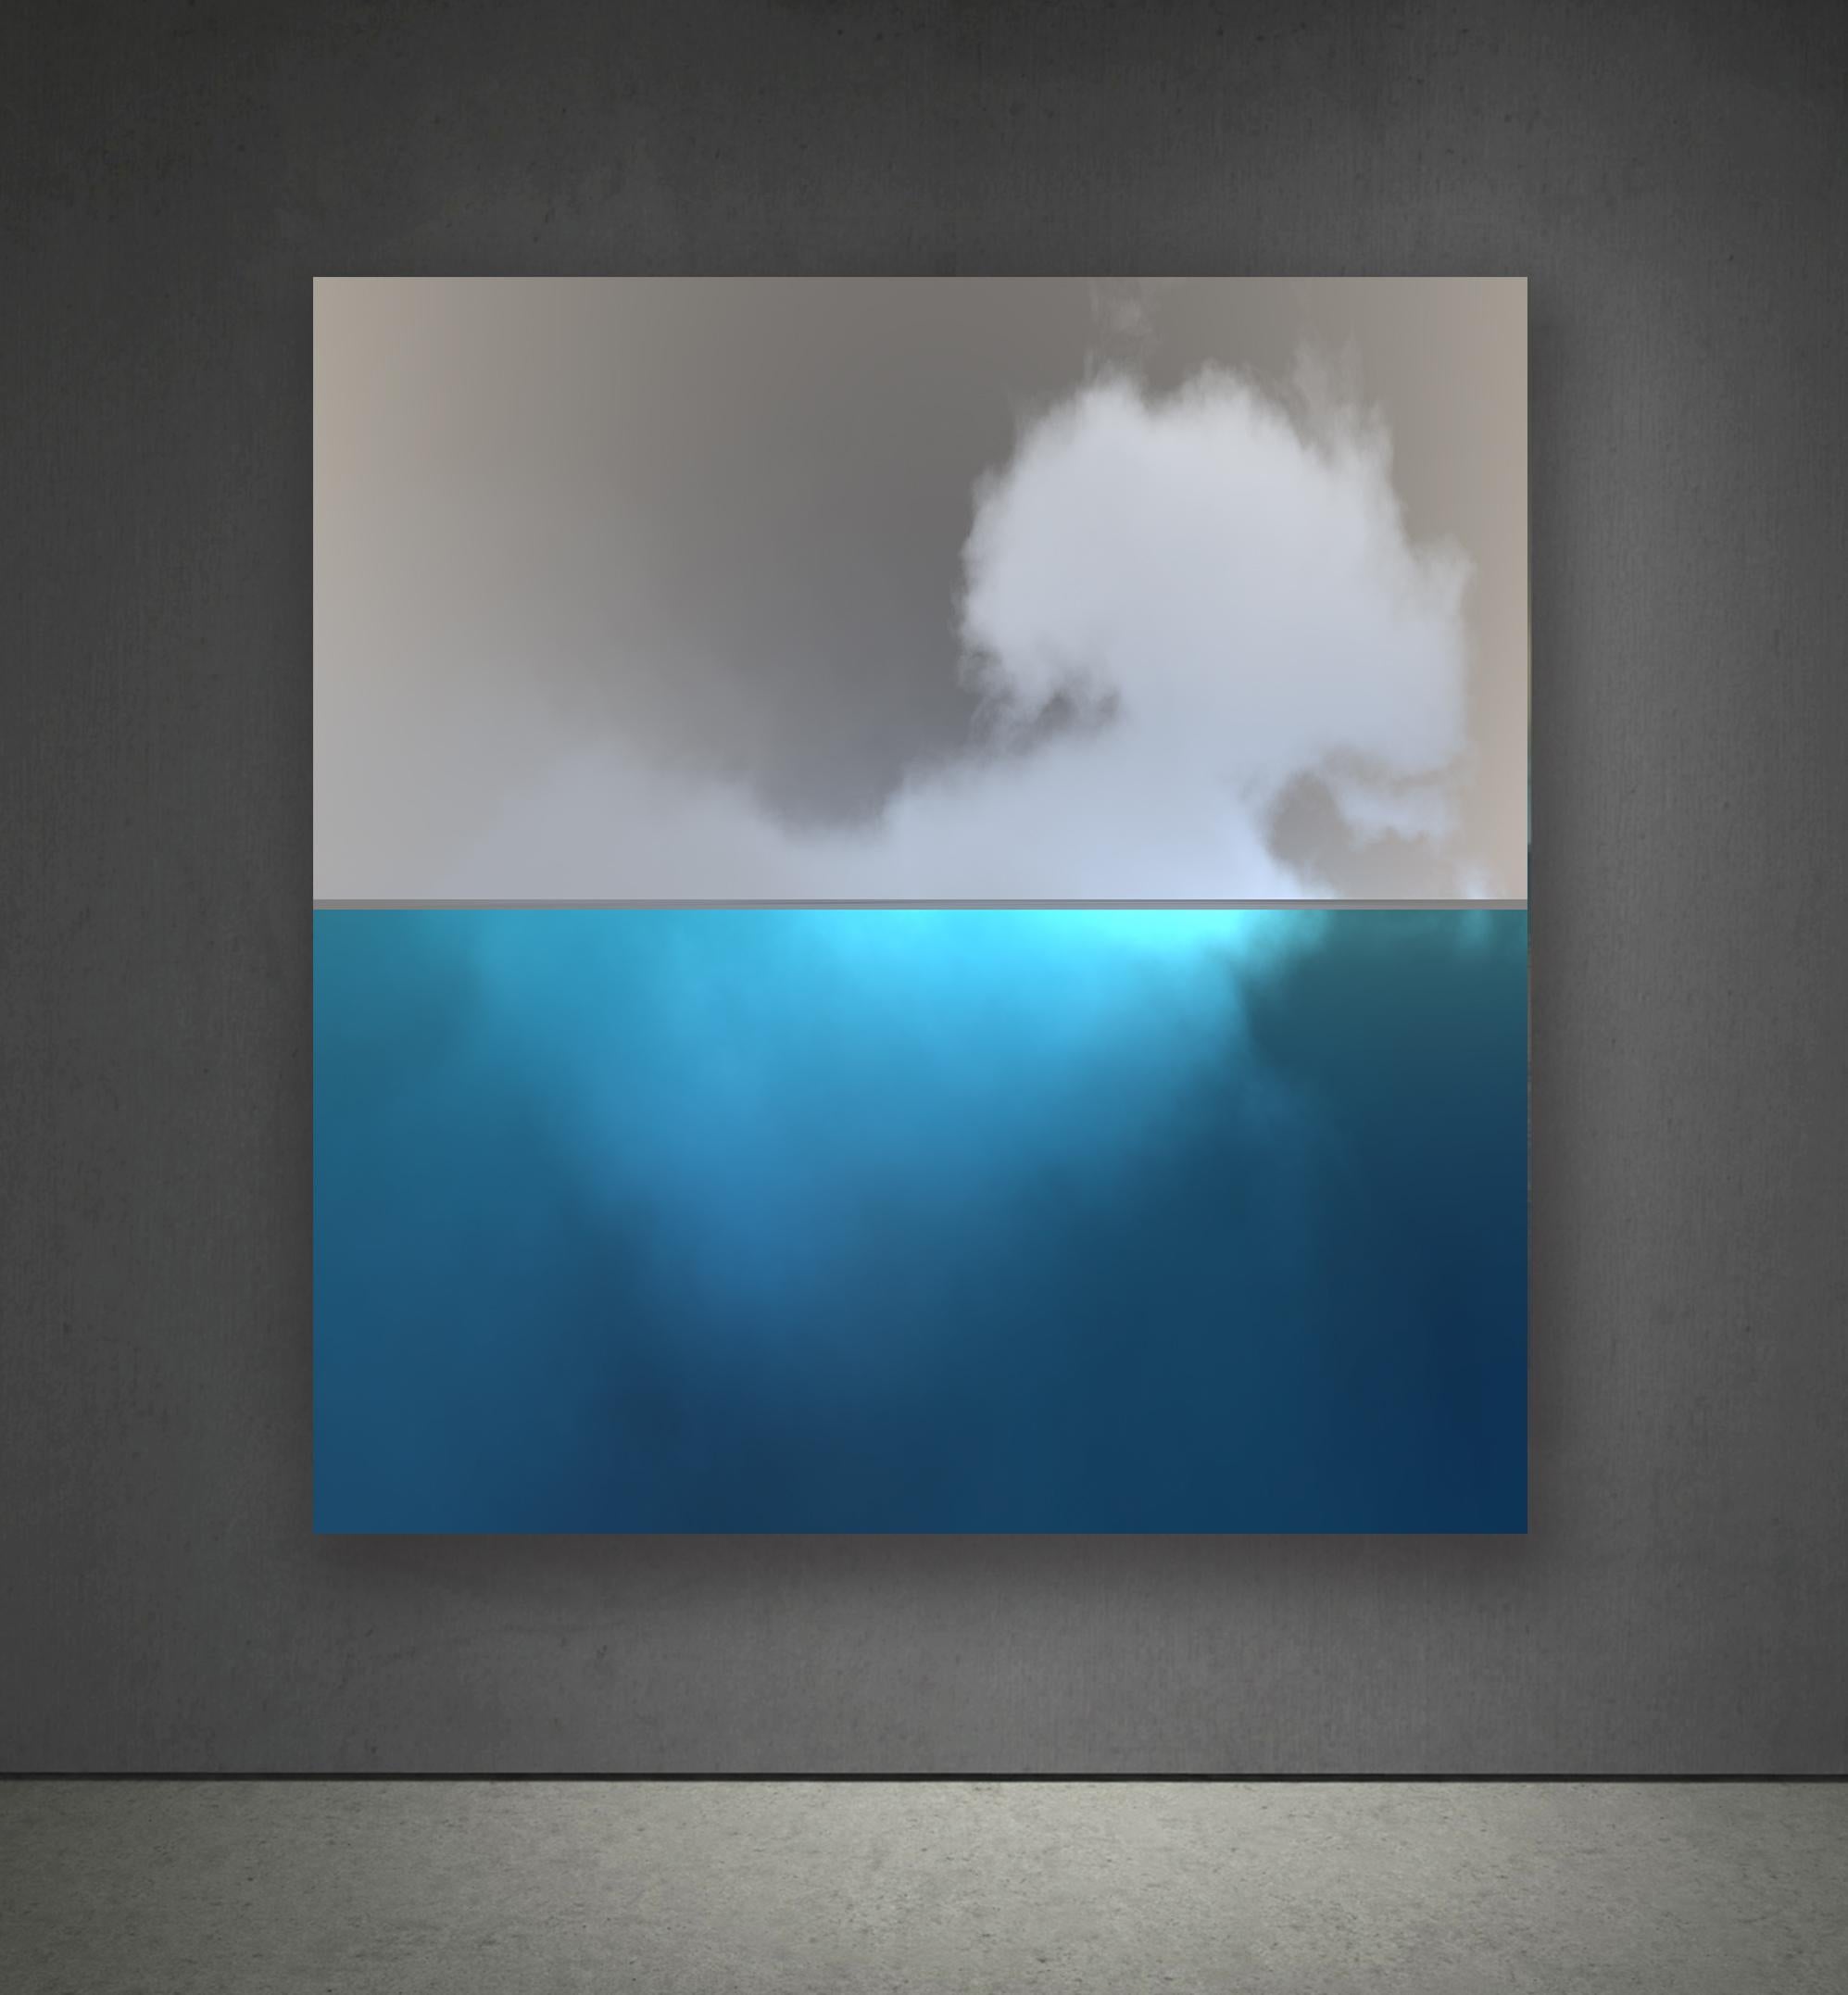 Clouds 18 - Contemporary Photograph by Paul-Émile Rioux